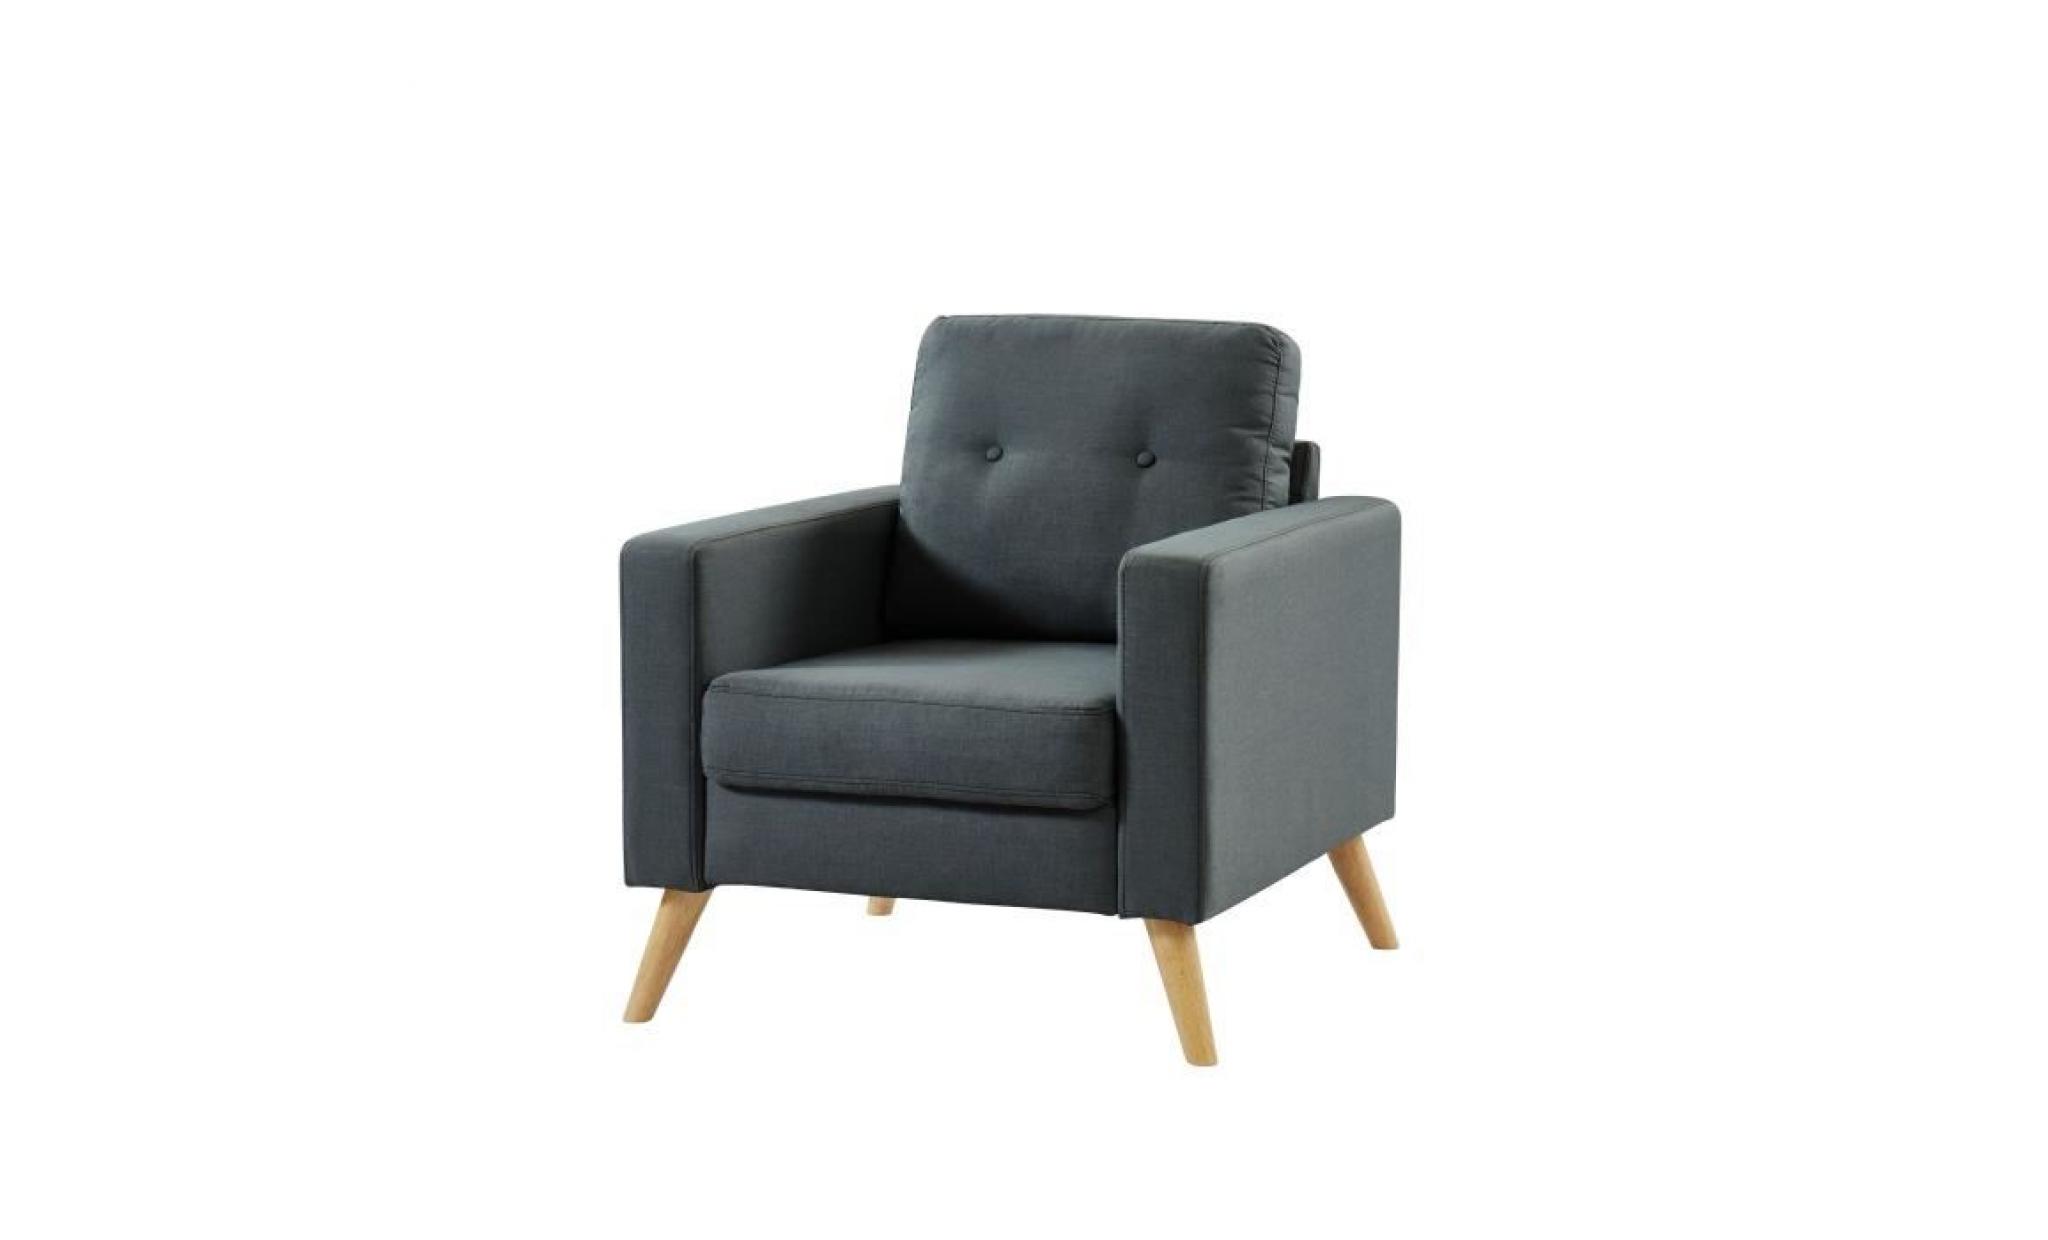 ibra fauteuil   tissu gris   scandinave   l 80 x p 83 cm pas cher